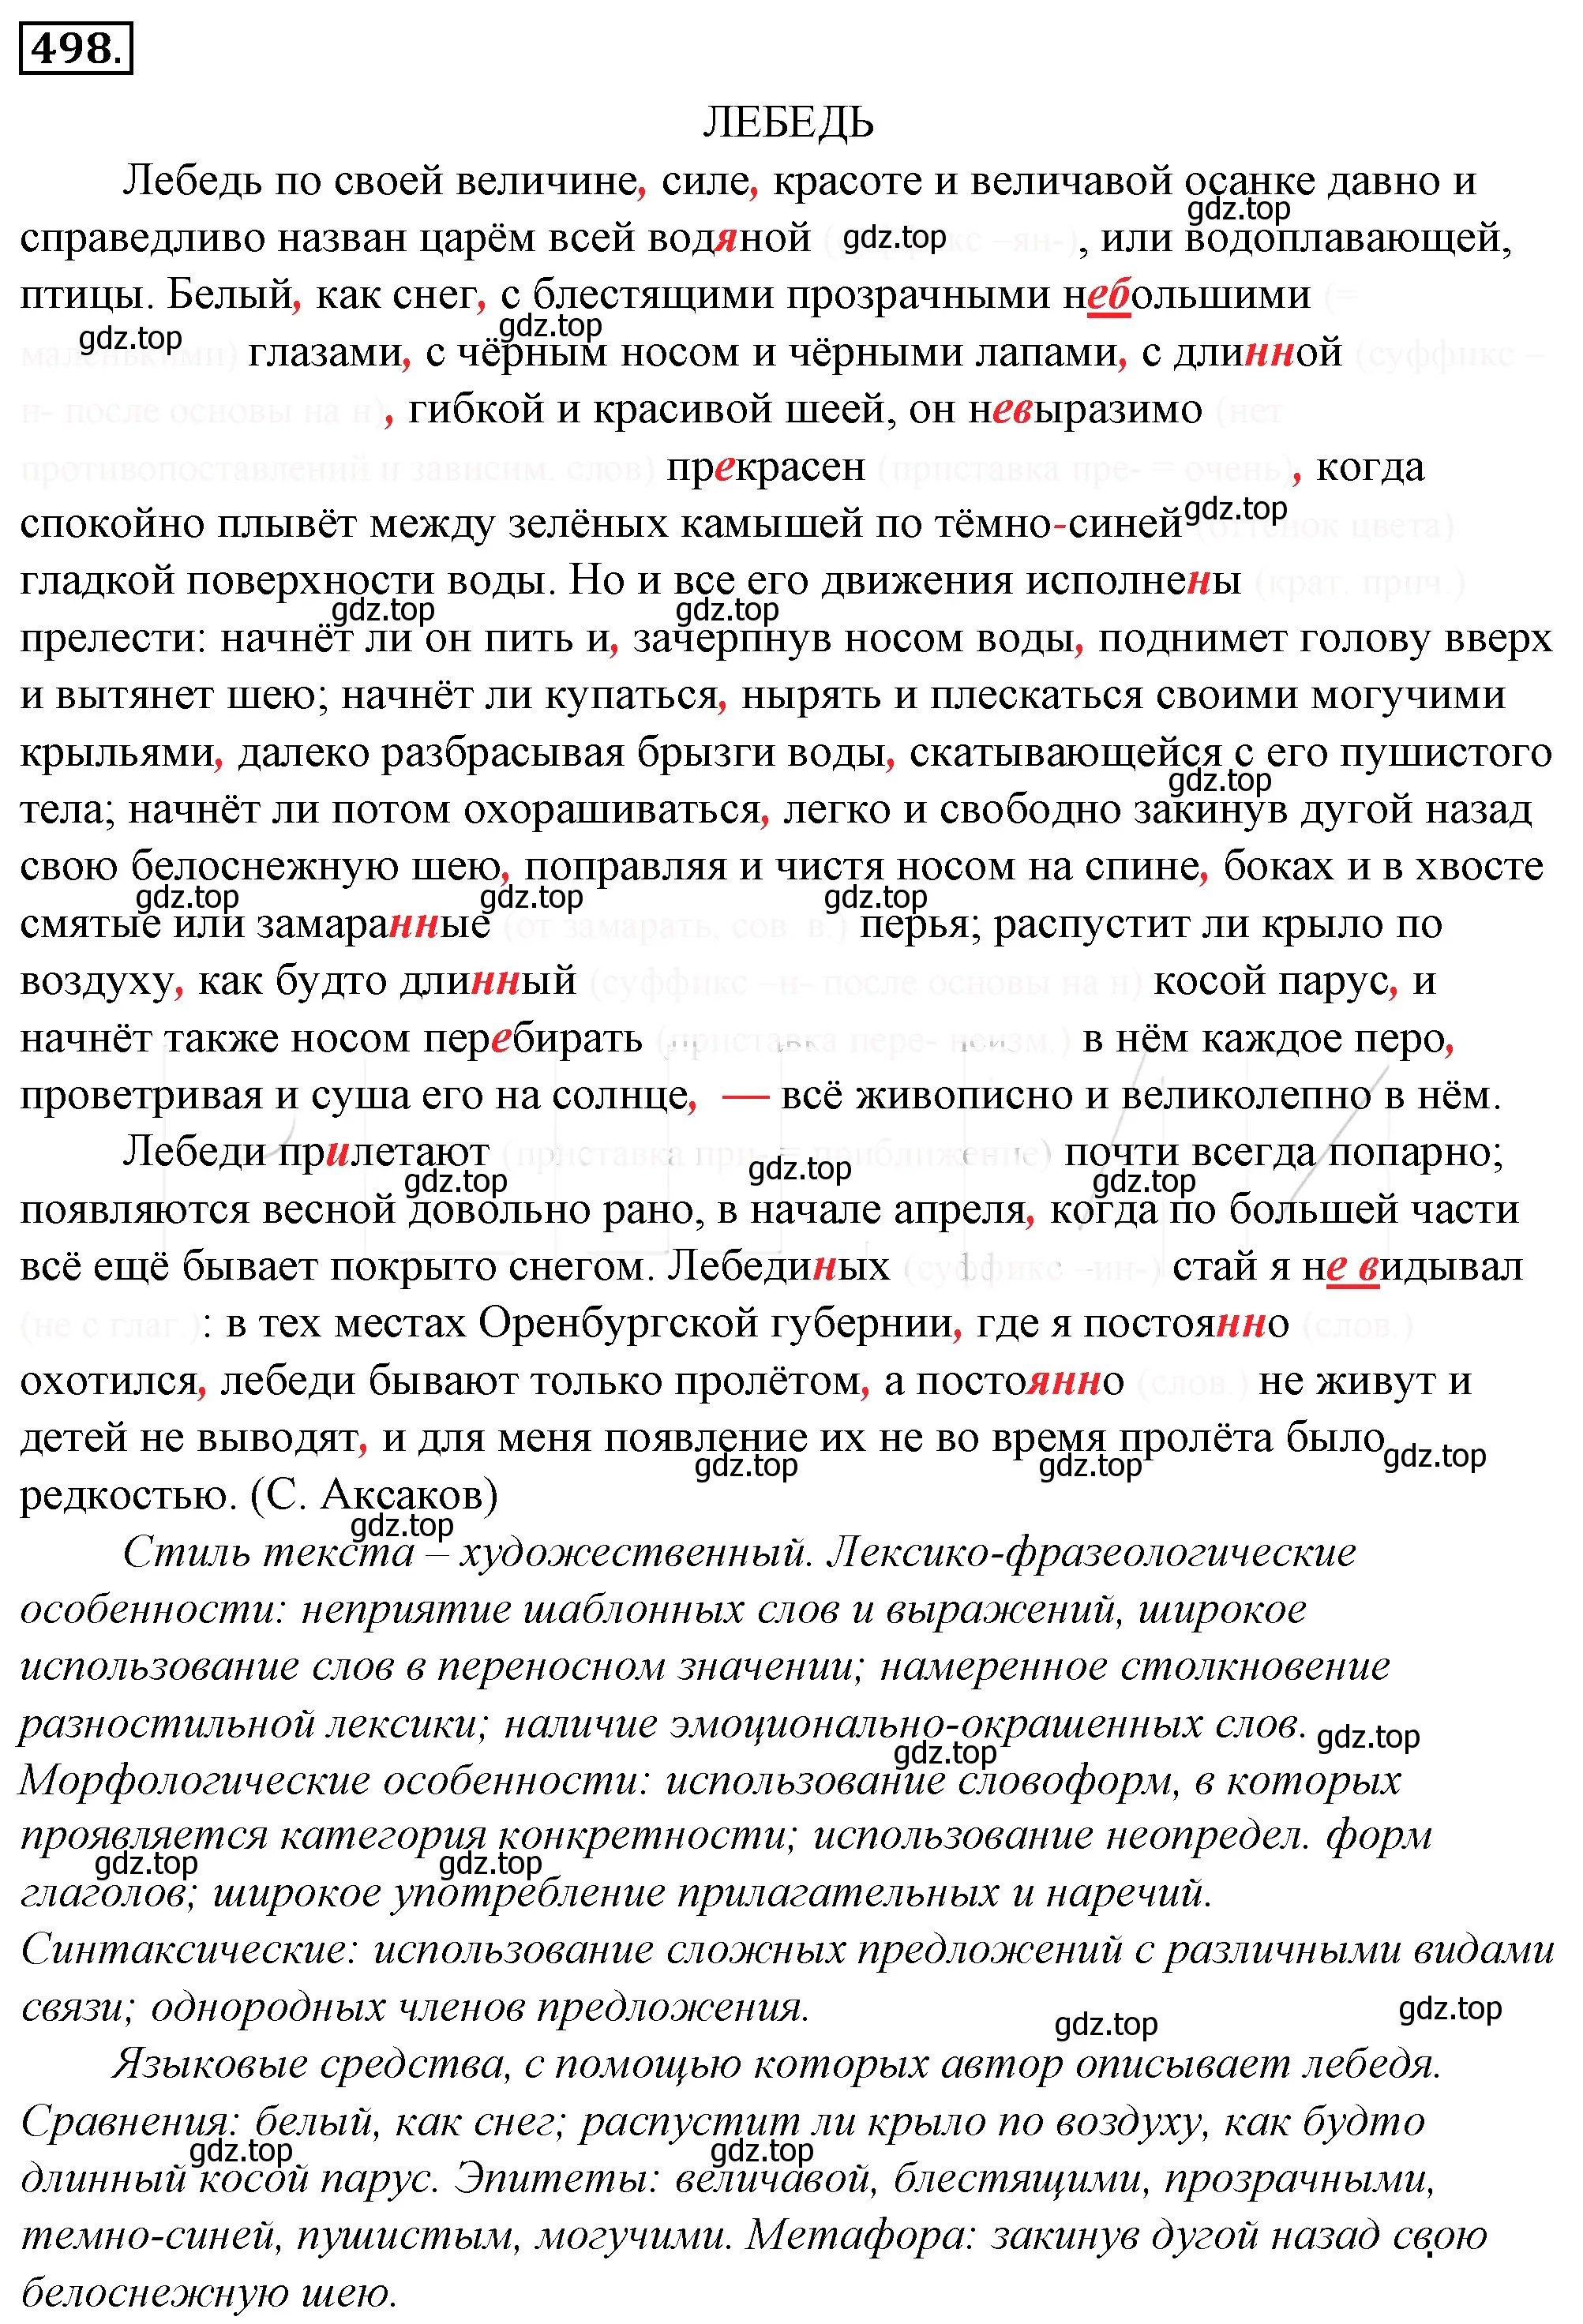 Решение 4. номер 163 (страница 227) гдз по русскому языку 10-11 класс Гольцова, Шамшин, учебник 2 часть